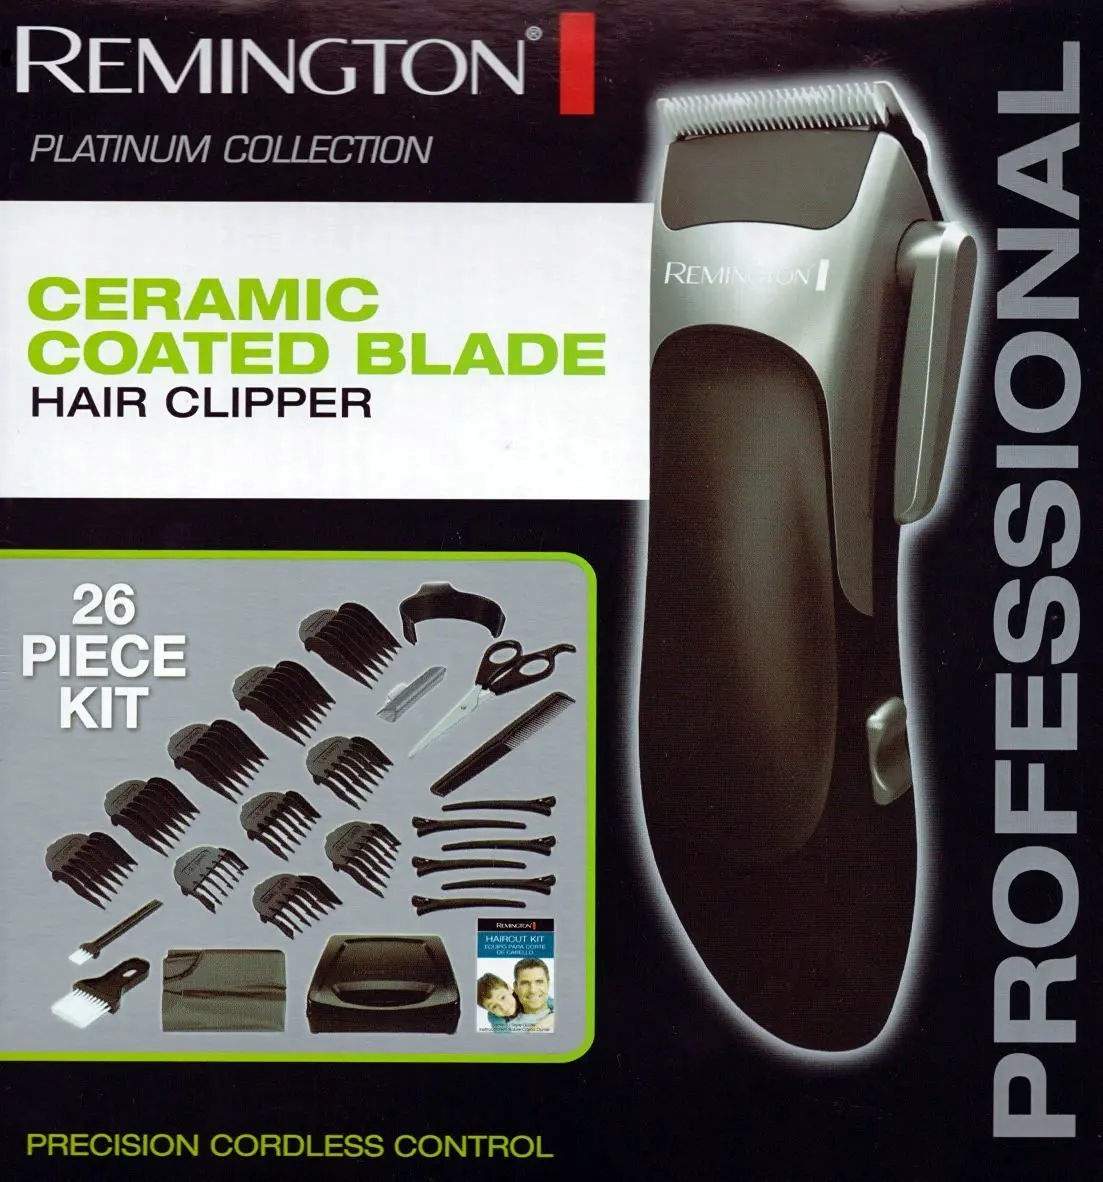 remington hc365 hair clipper set